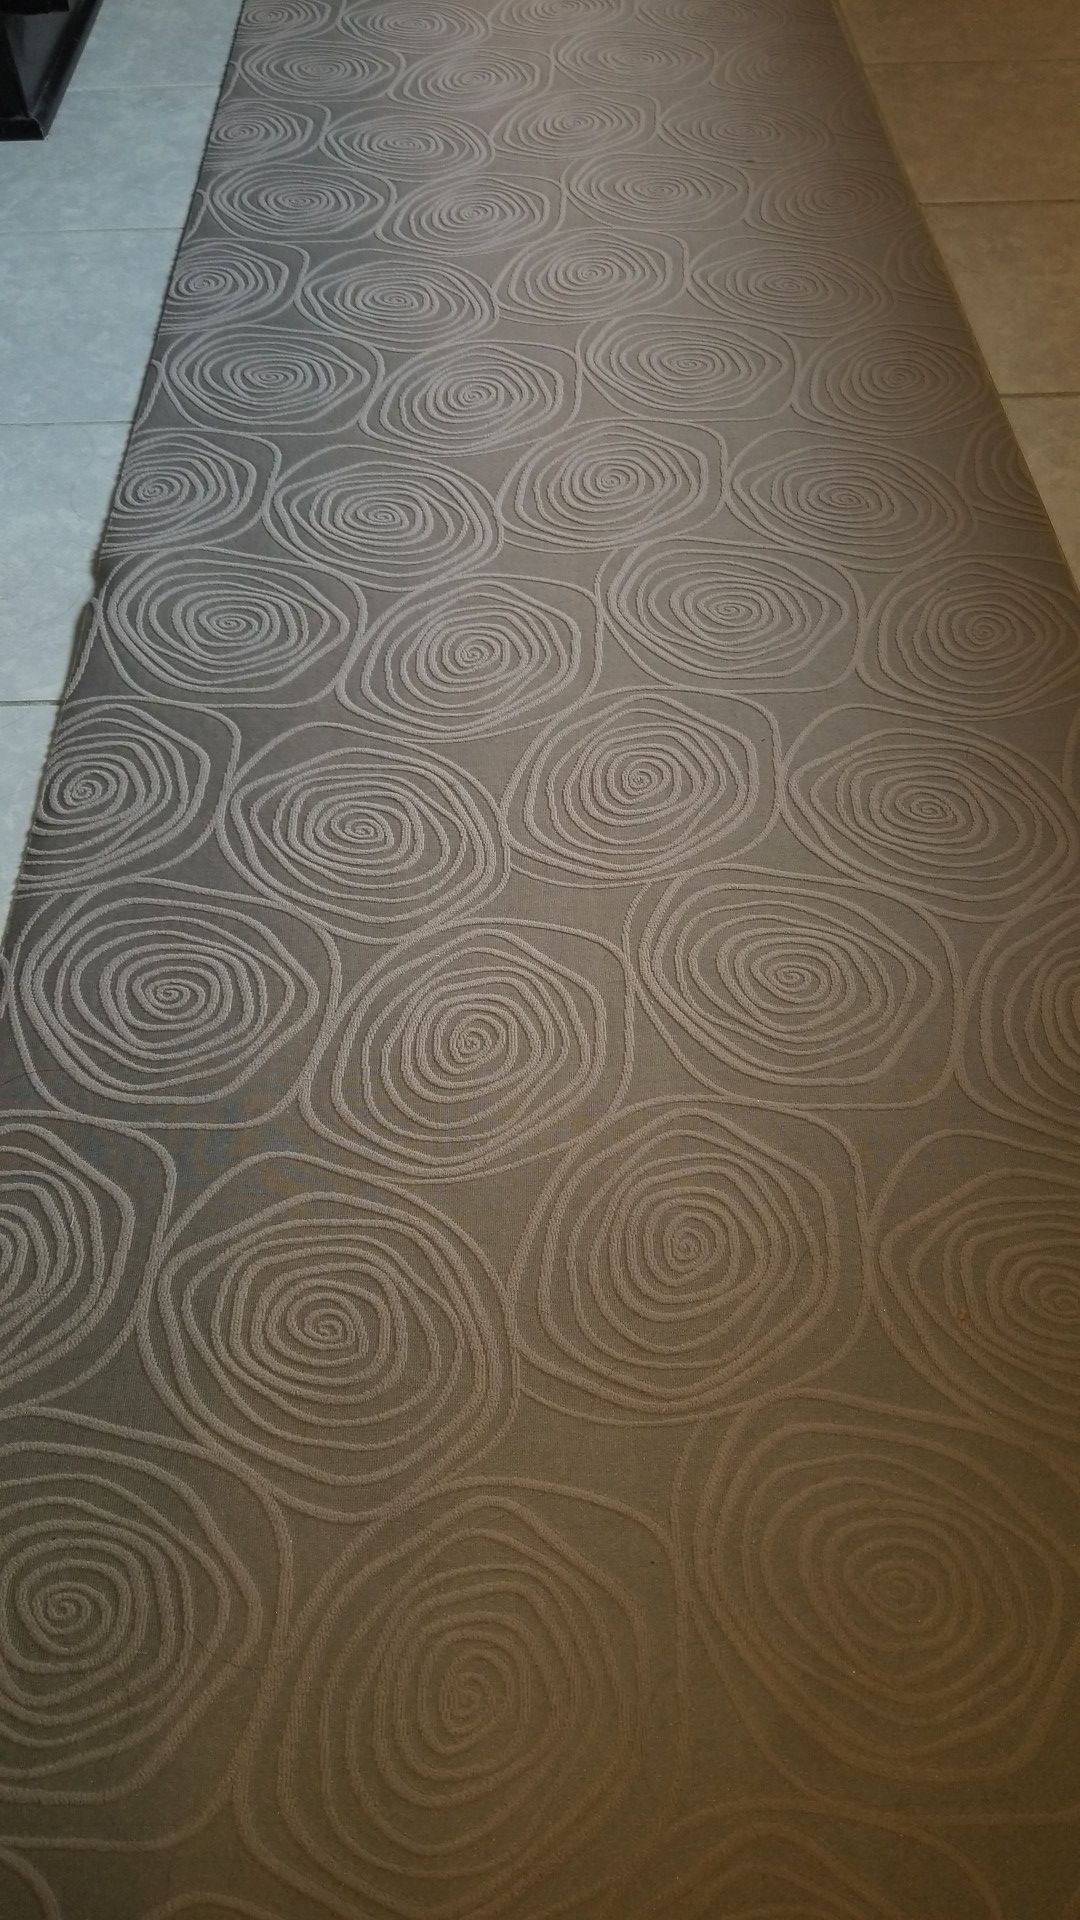 Bellisima kitchen runner rug, anti skid rubber backing, beige 2'2x10'0